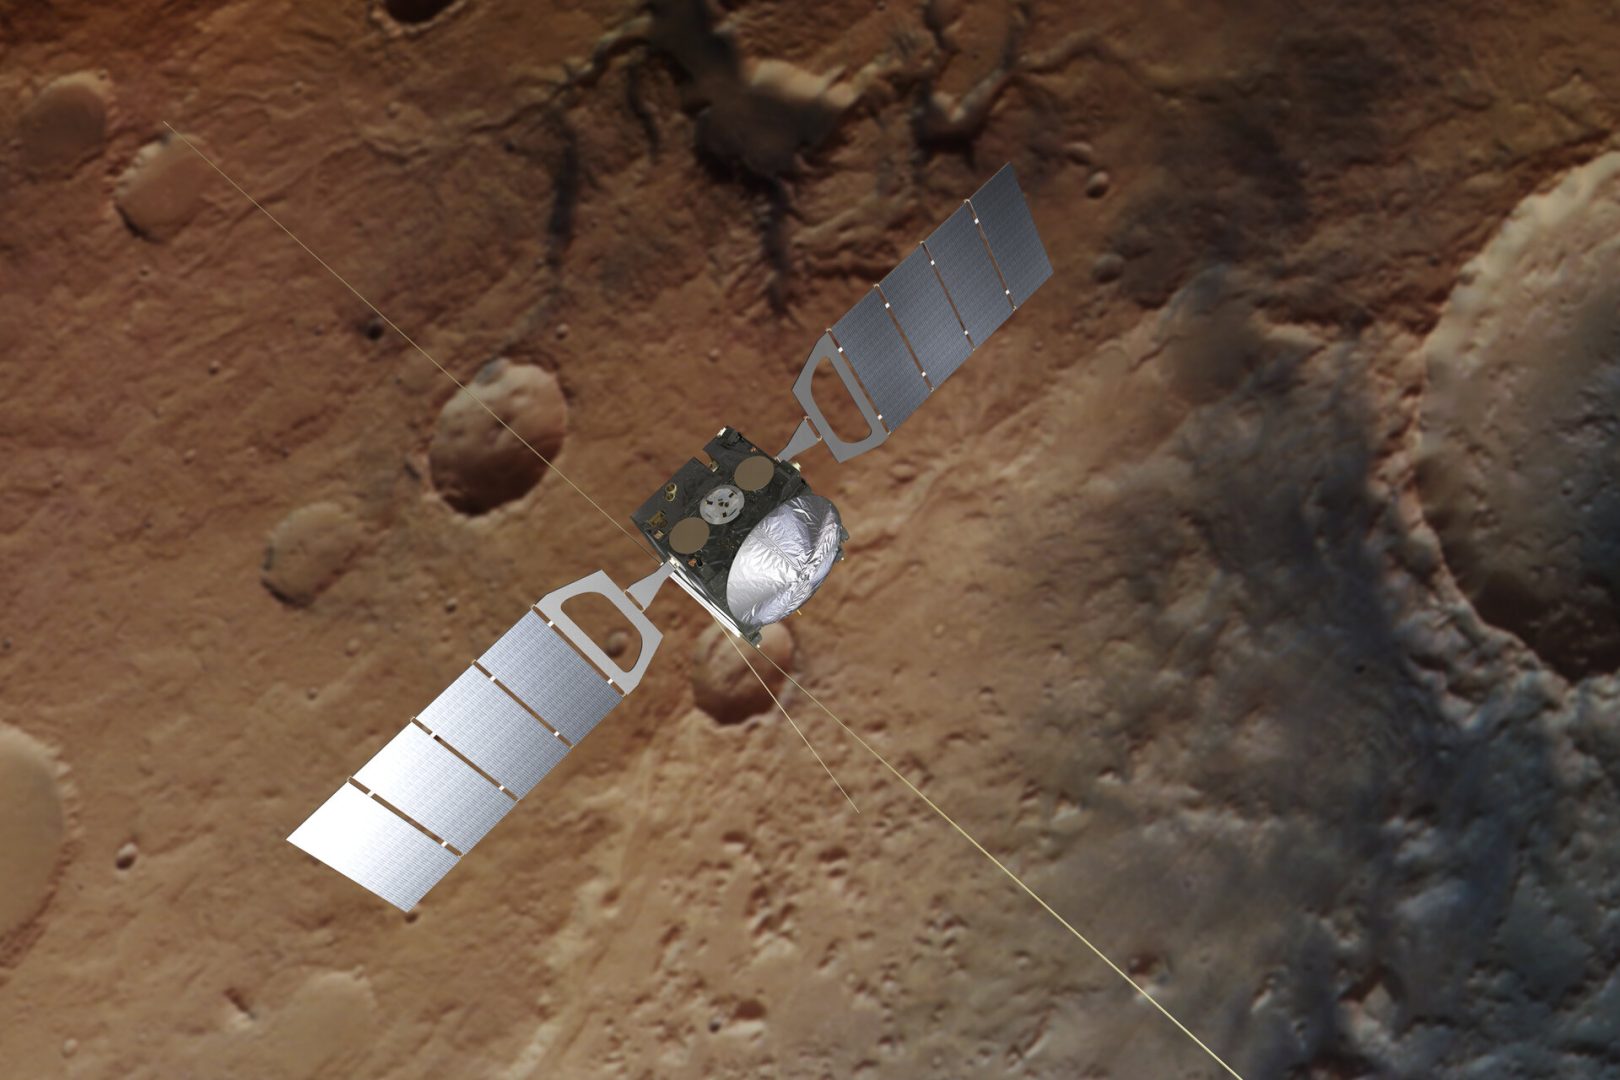 Mars_Express_Uzay-Araci-ESA-1620x1080.jpg